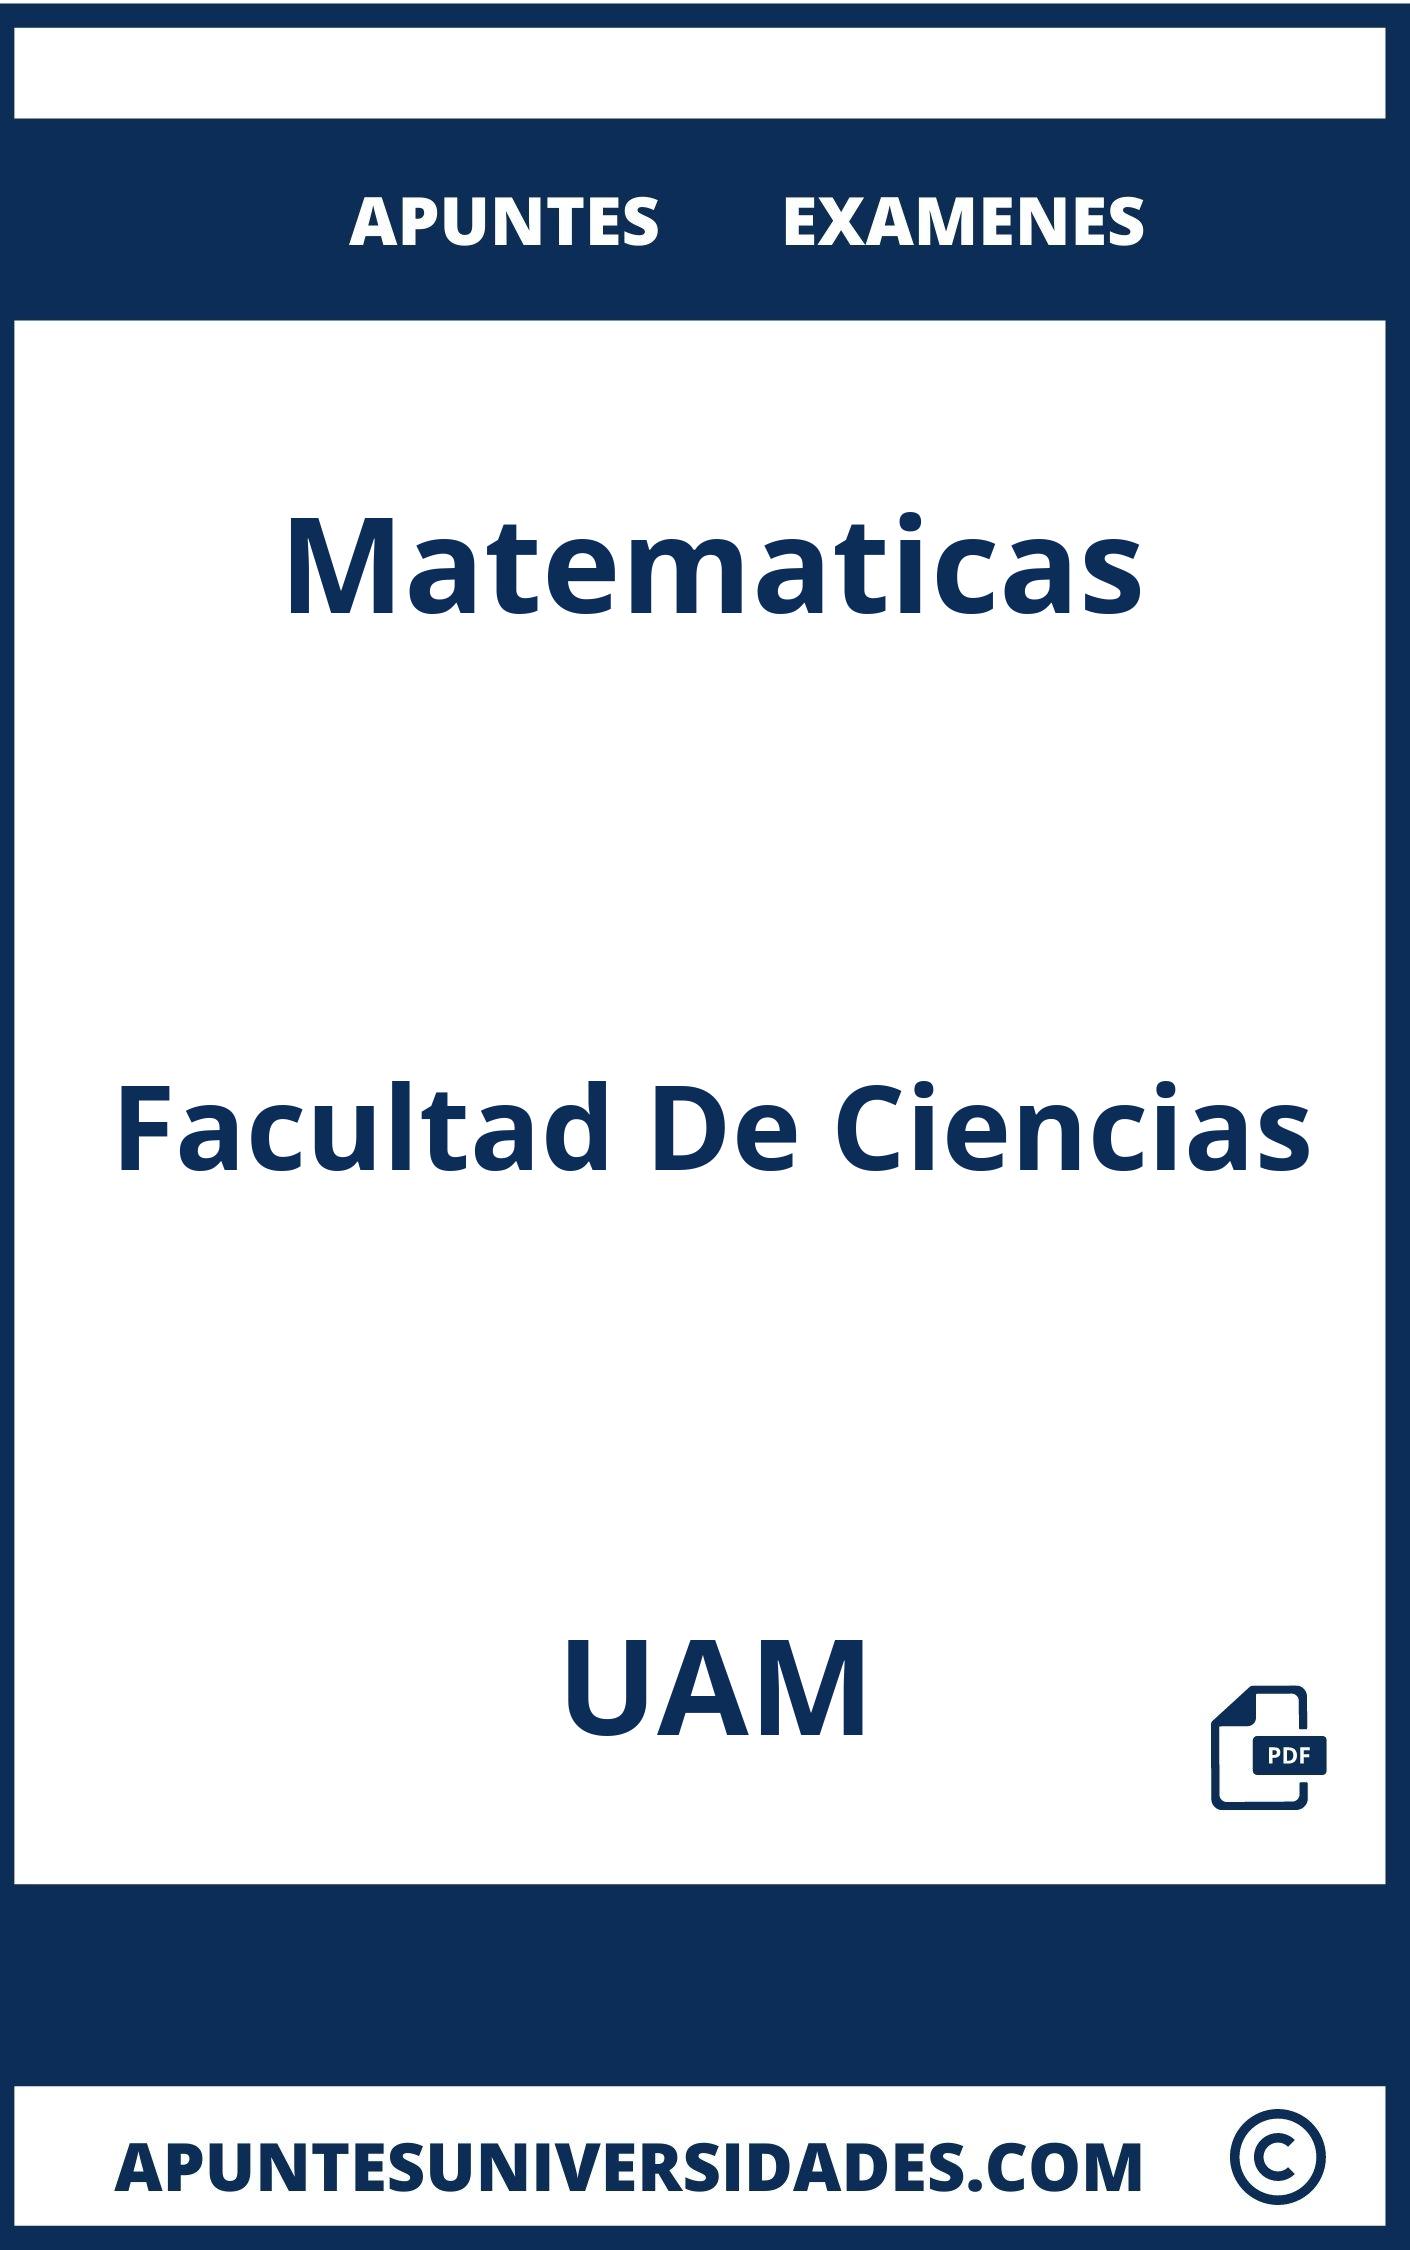 Examenes y Apuntes de Matematicas UAM